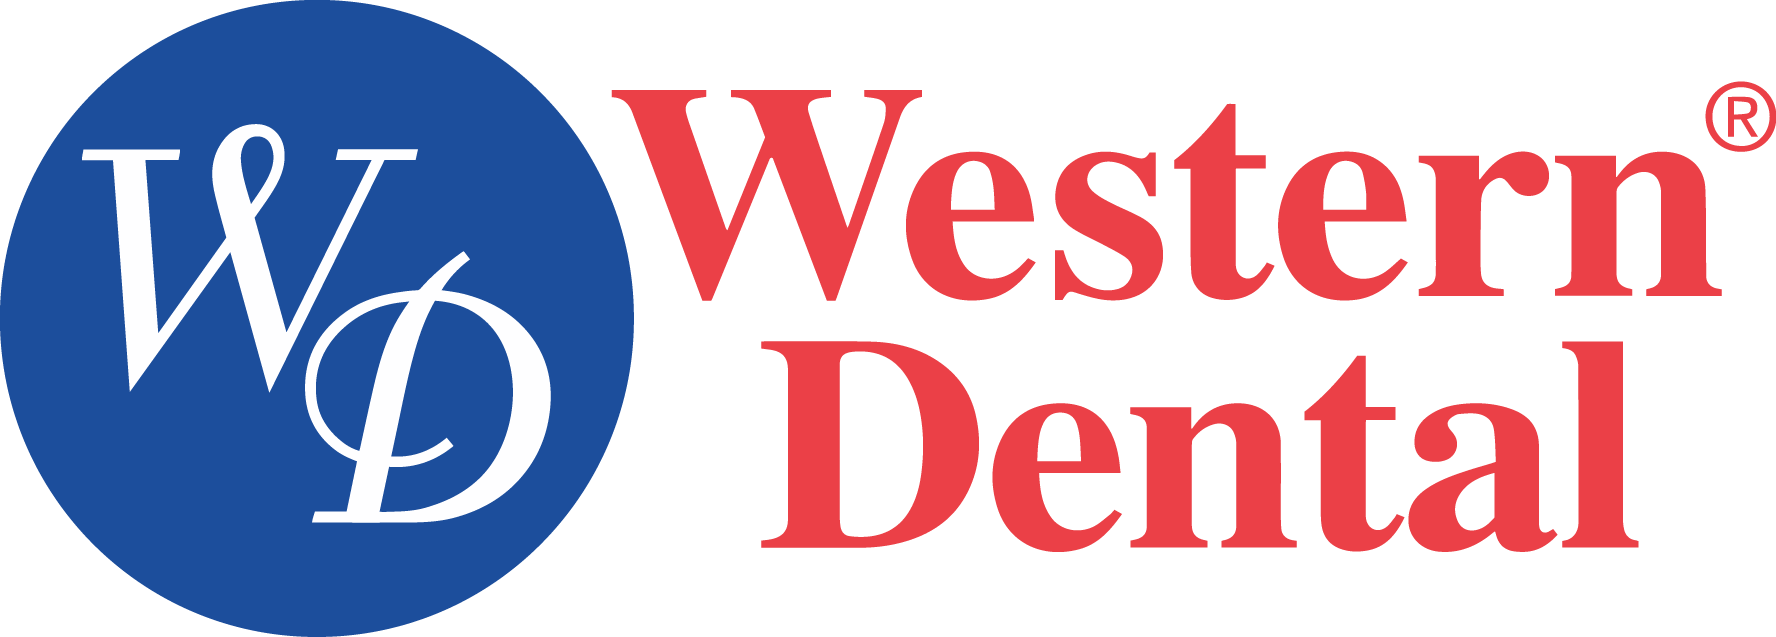 Western Dental Logo - Western Dental Logo Png Clipart (1776x637), Png Download